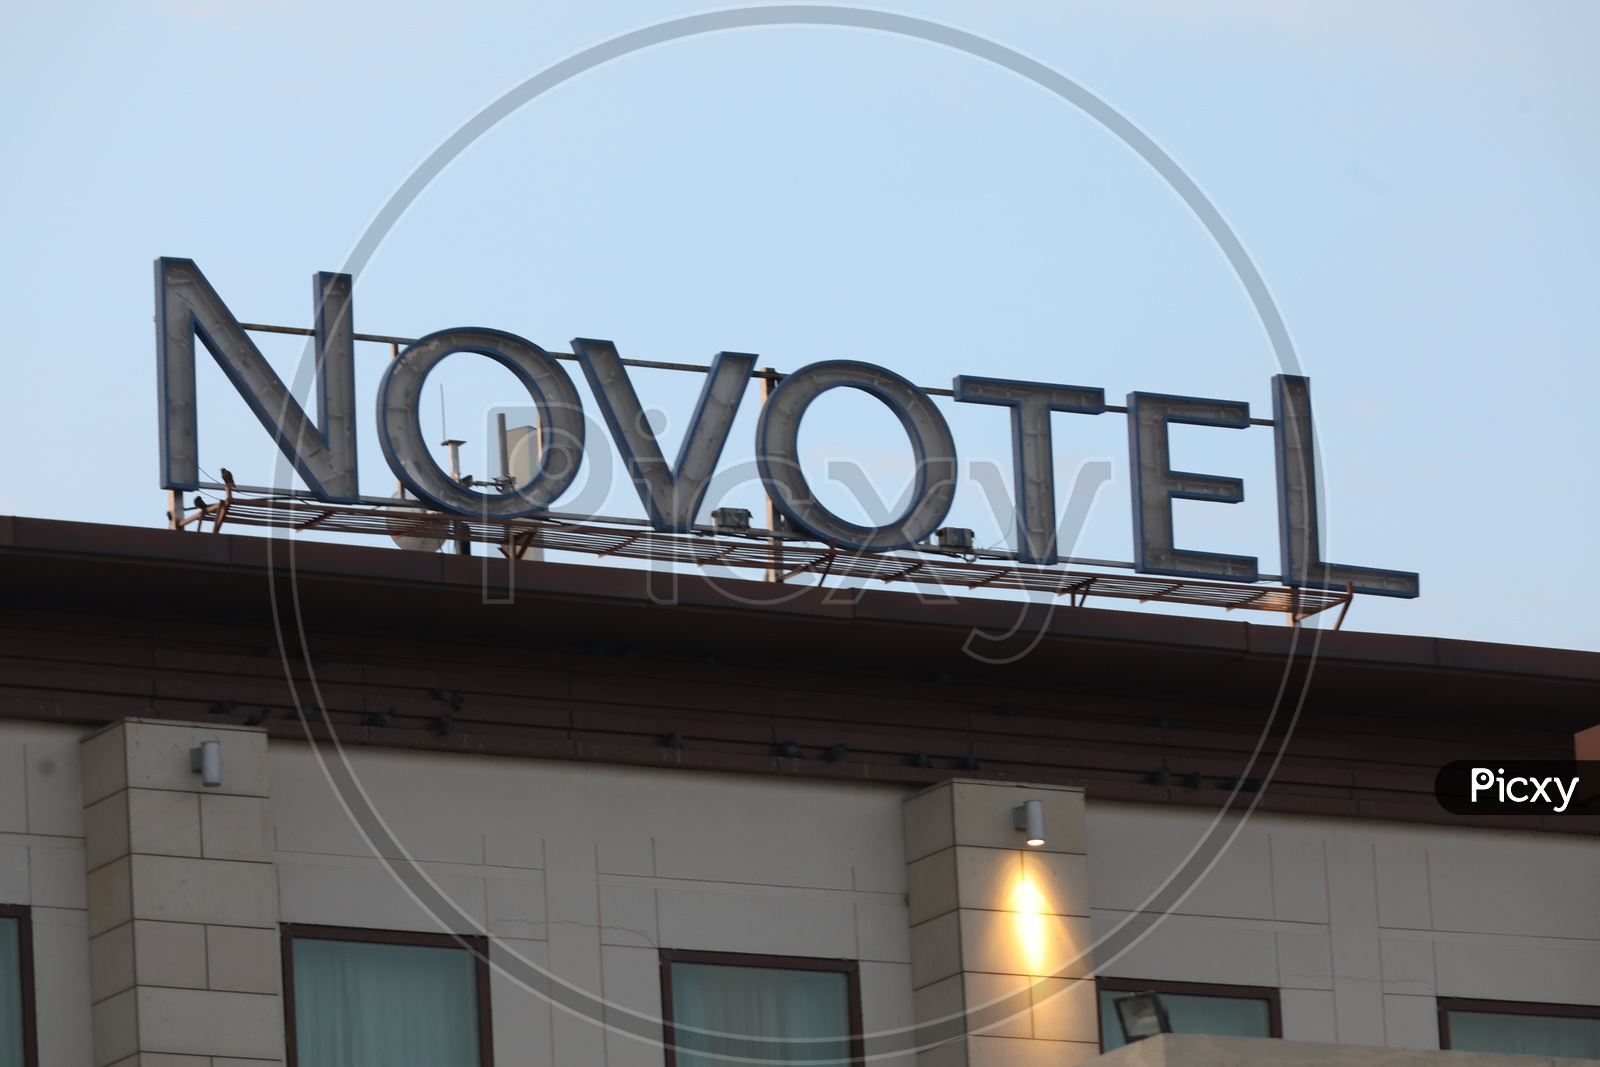 NOVOTEL Hotel Name Board